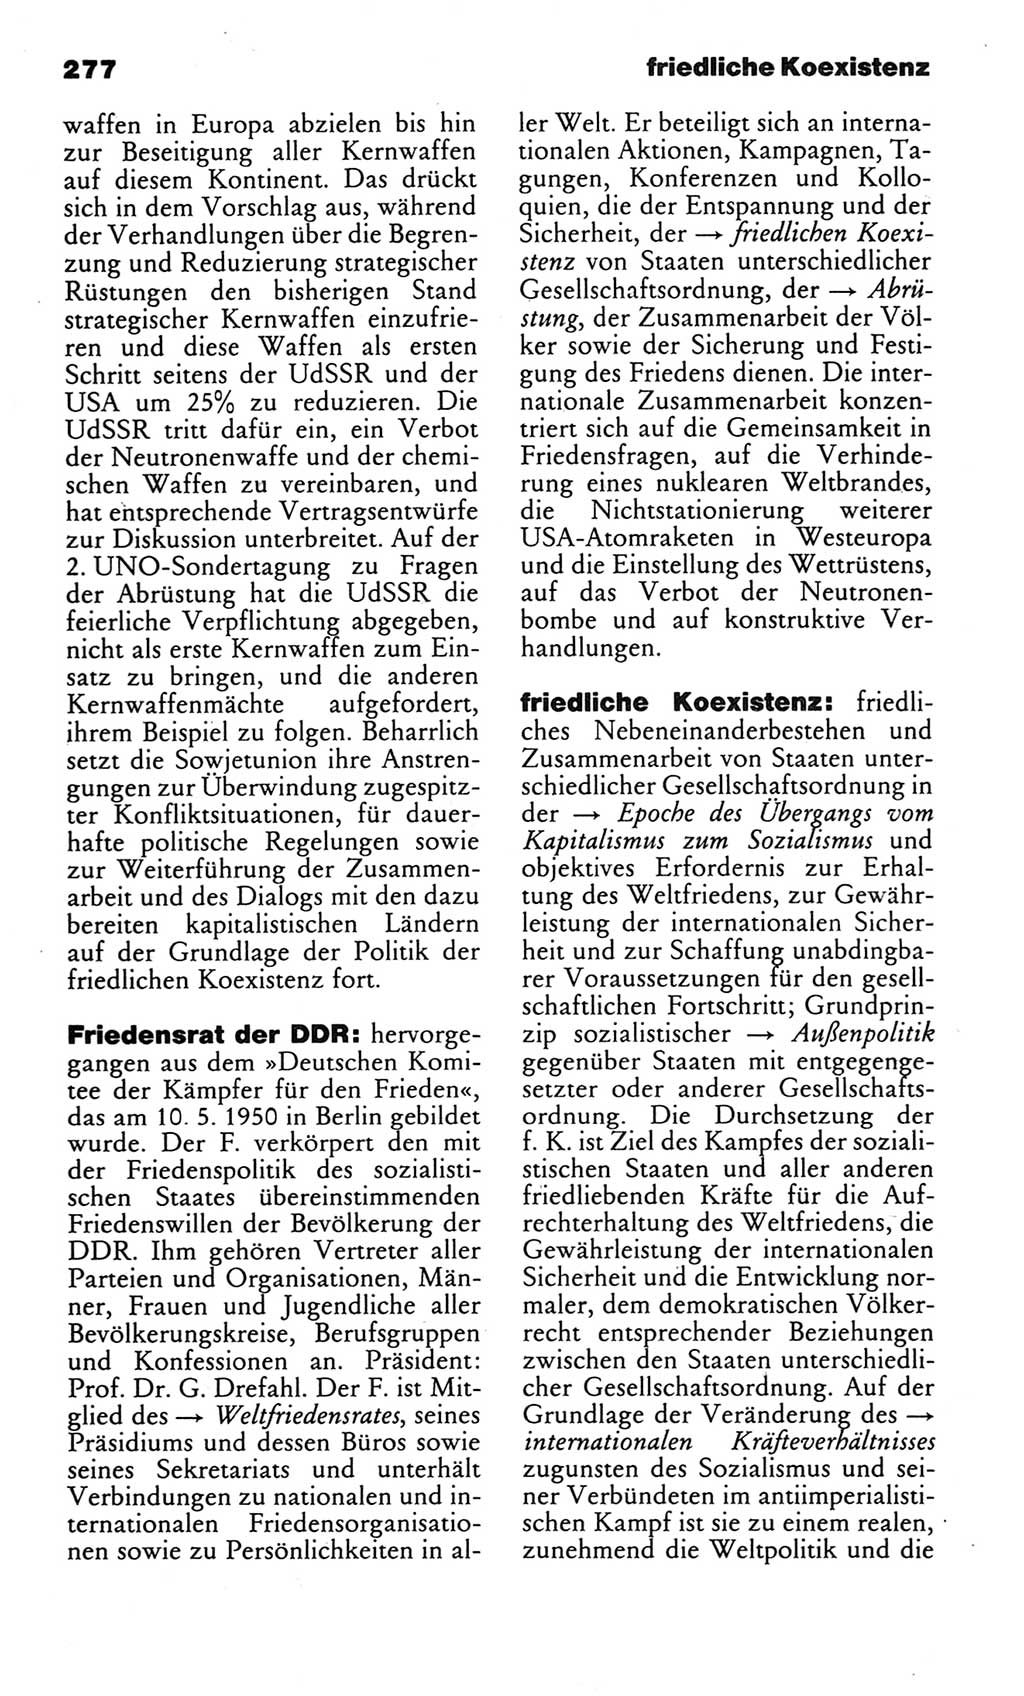 Kleines politisches Wörterbuch [Deutsche Demokratische Republik (DDR)] 1983, Seite 277 (Kl. pol. Wb. DDR 1983, S. 277)